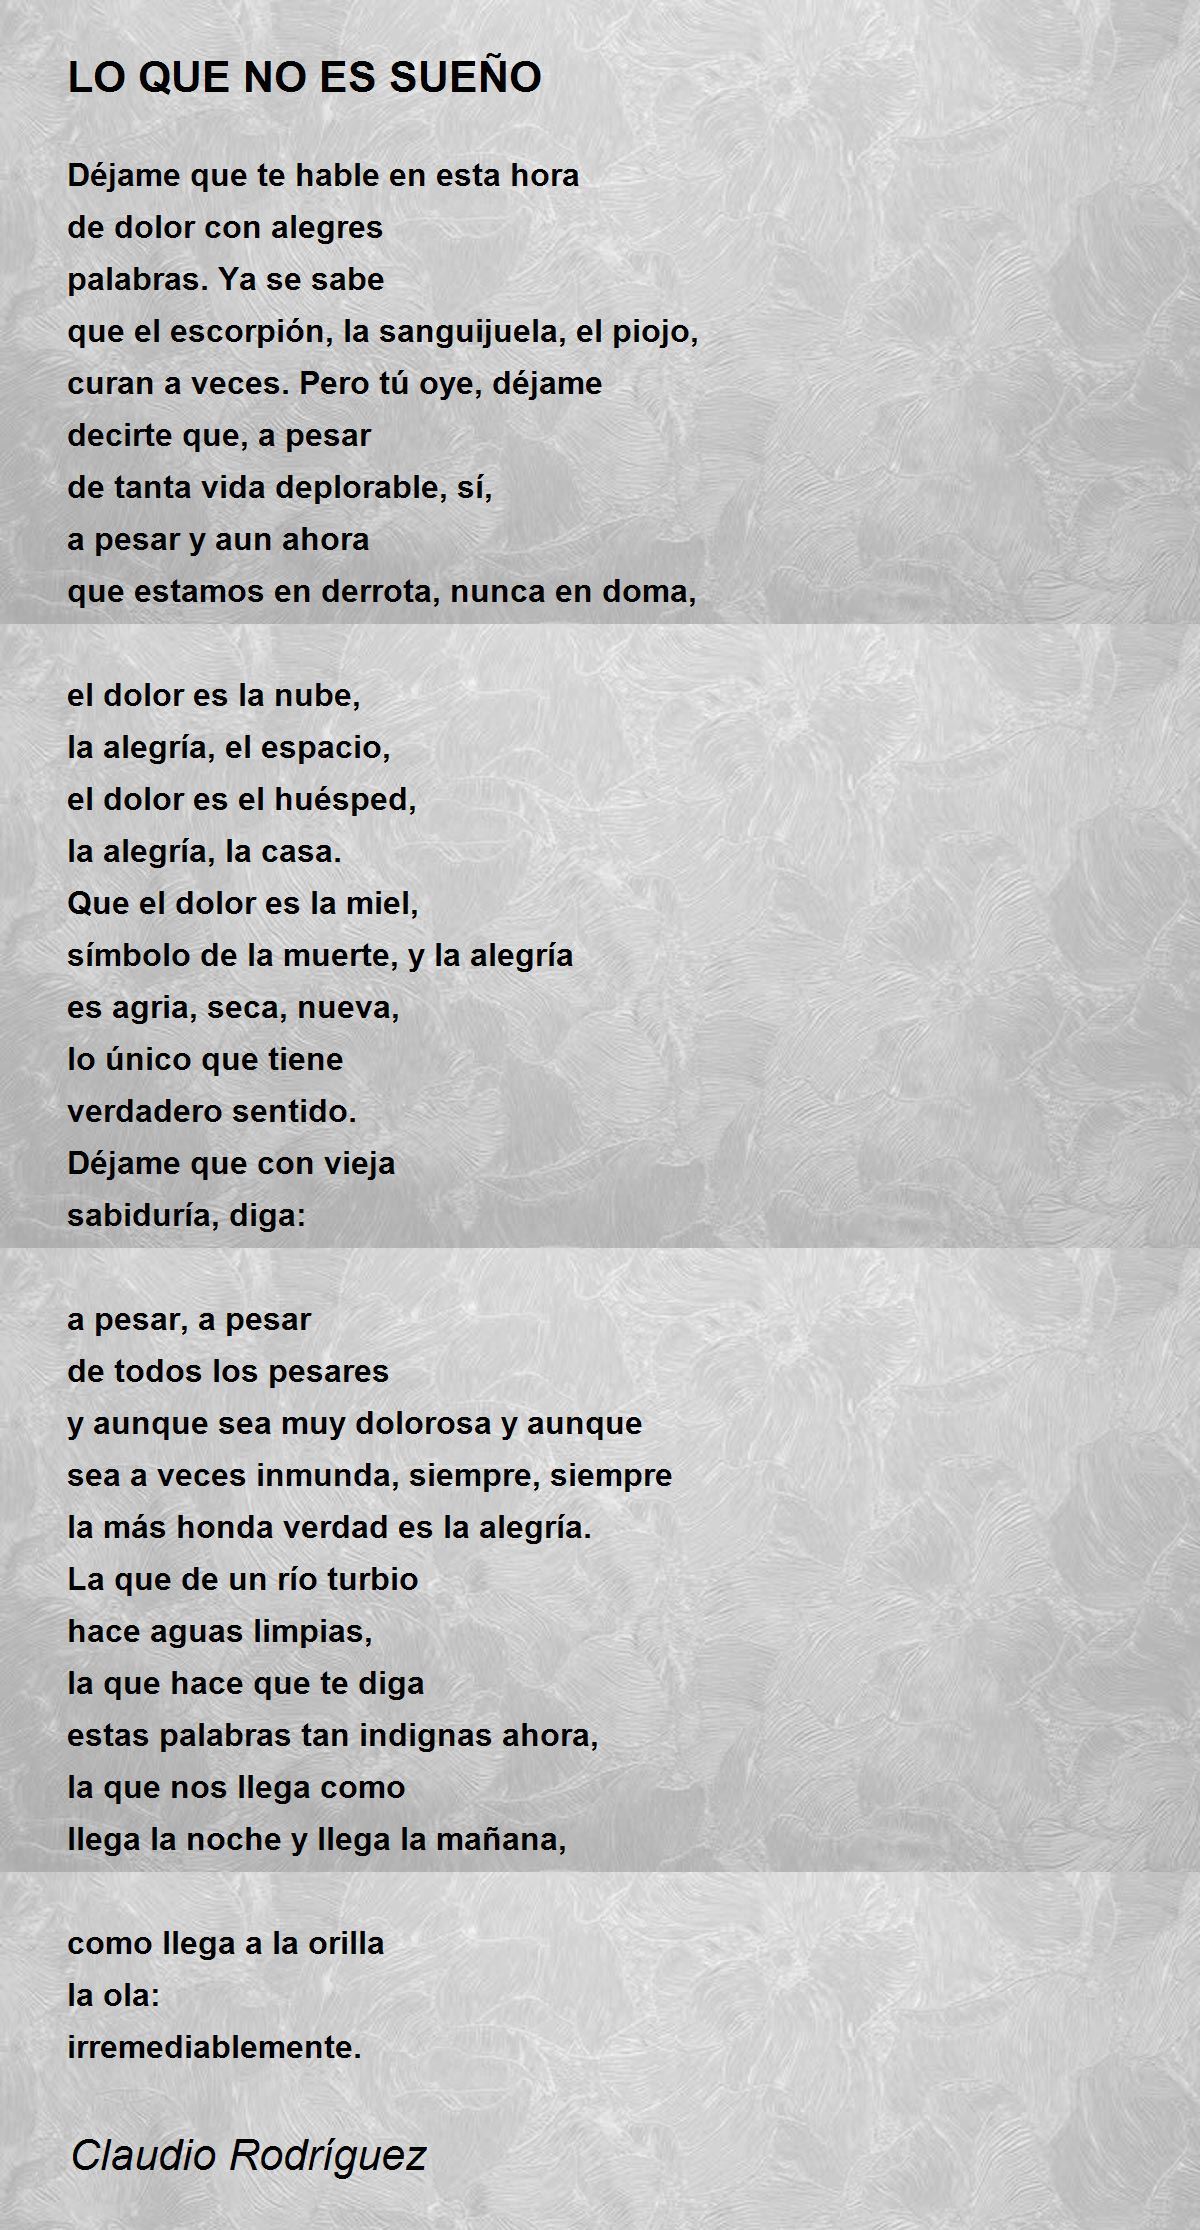 LO QUE NO ES SUEÑO - LO QUE NO ES SUEÑO Poem by Claudio Rodríguez